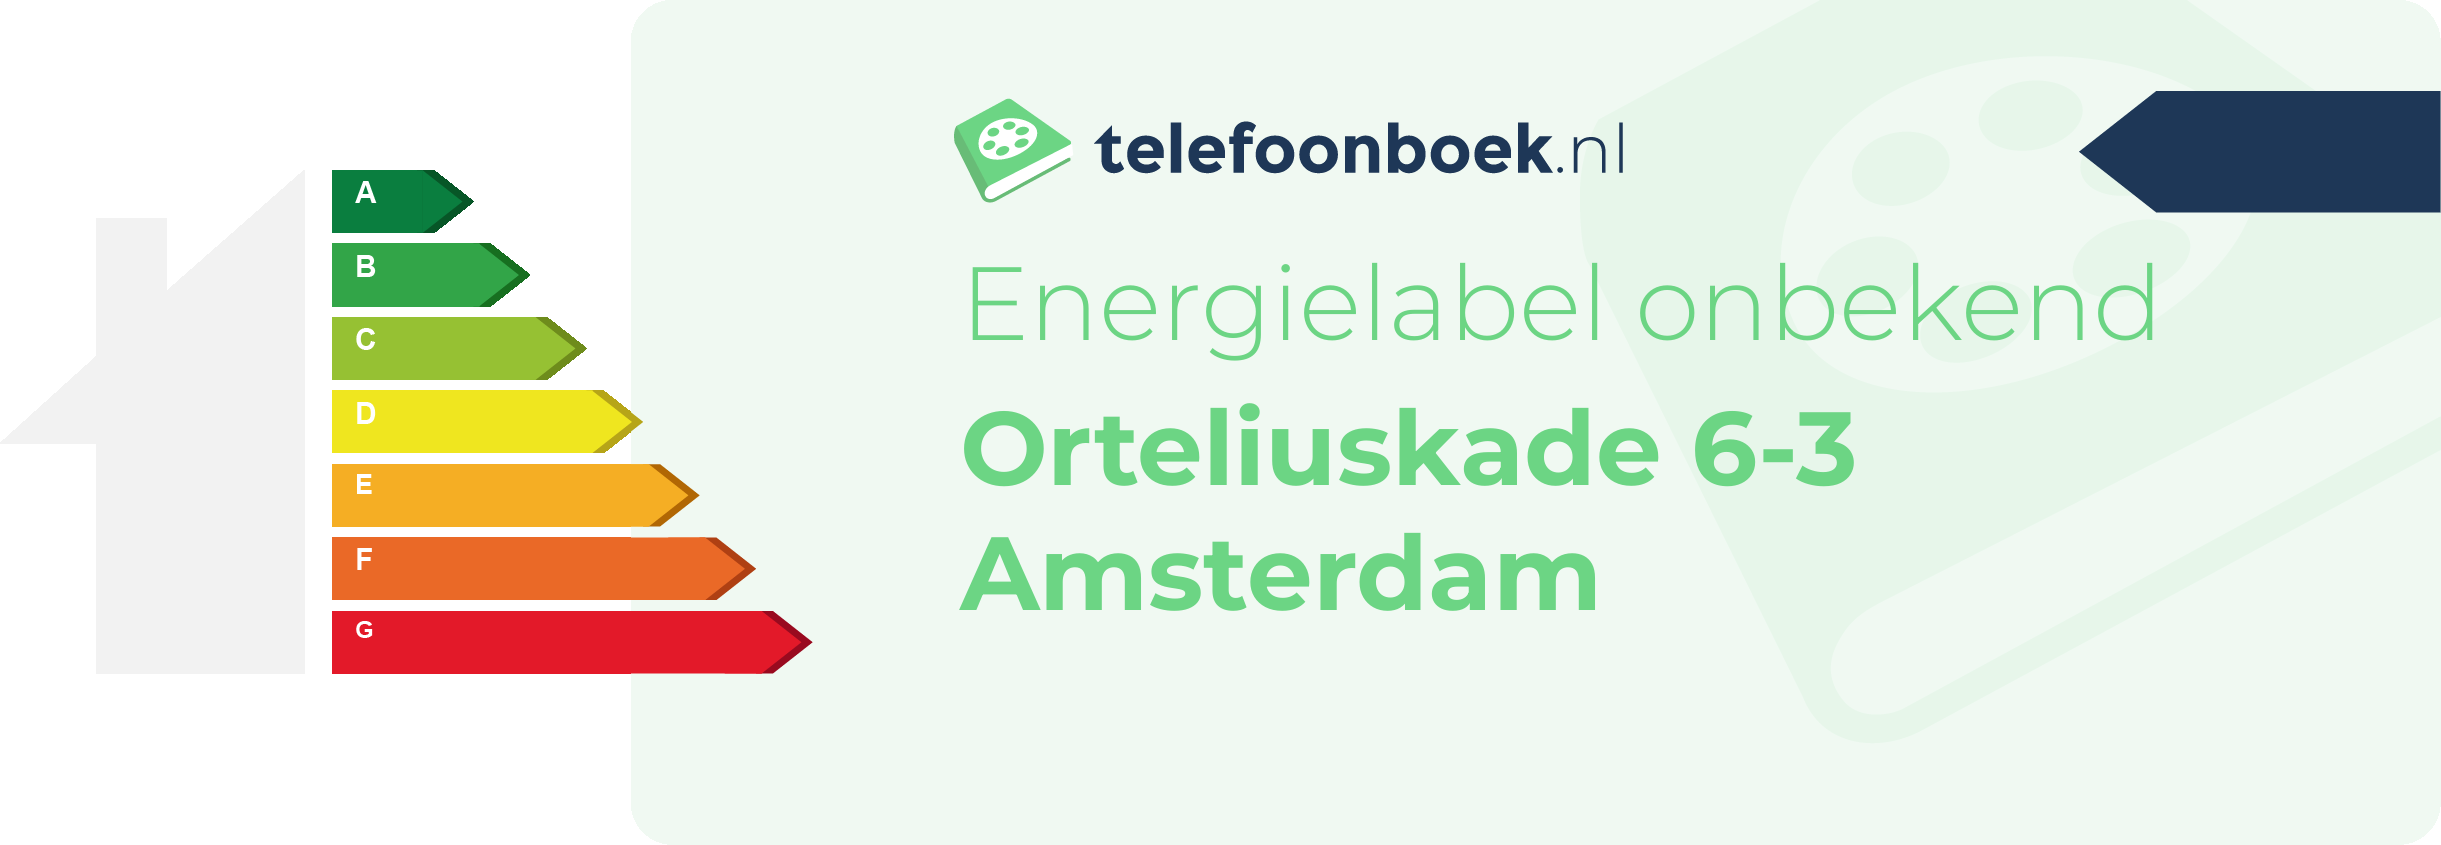 Energielabel Orteliuskade 6-3 Amsterdam